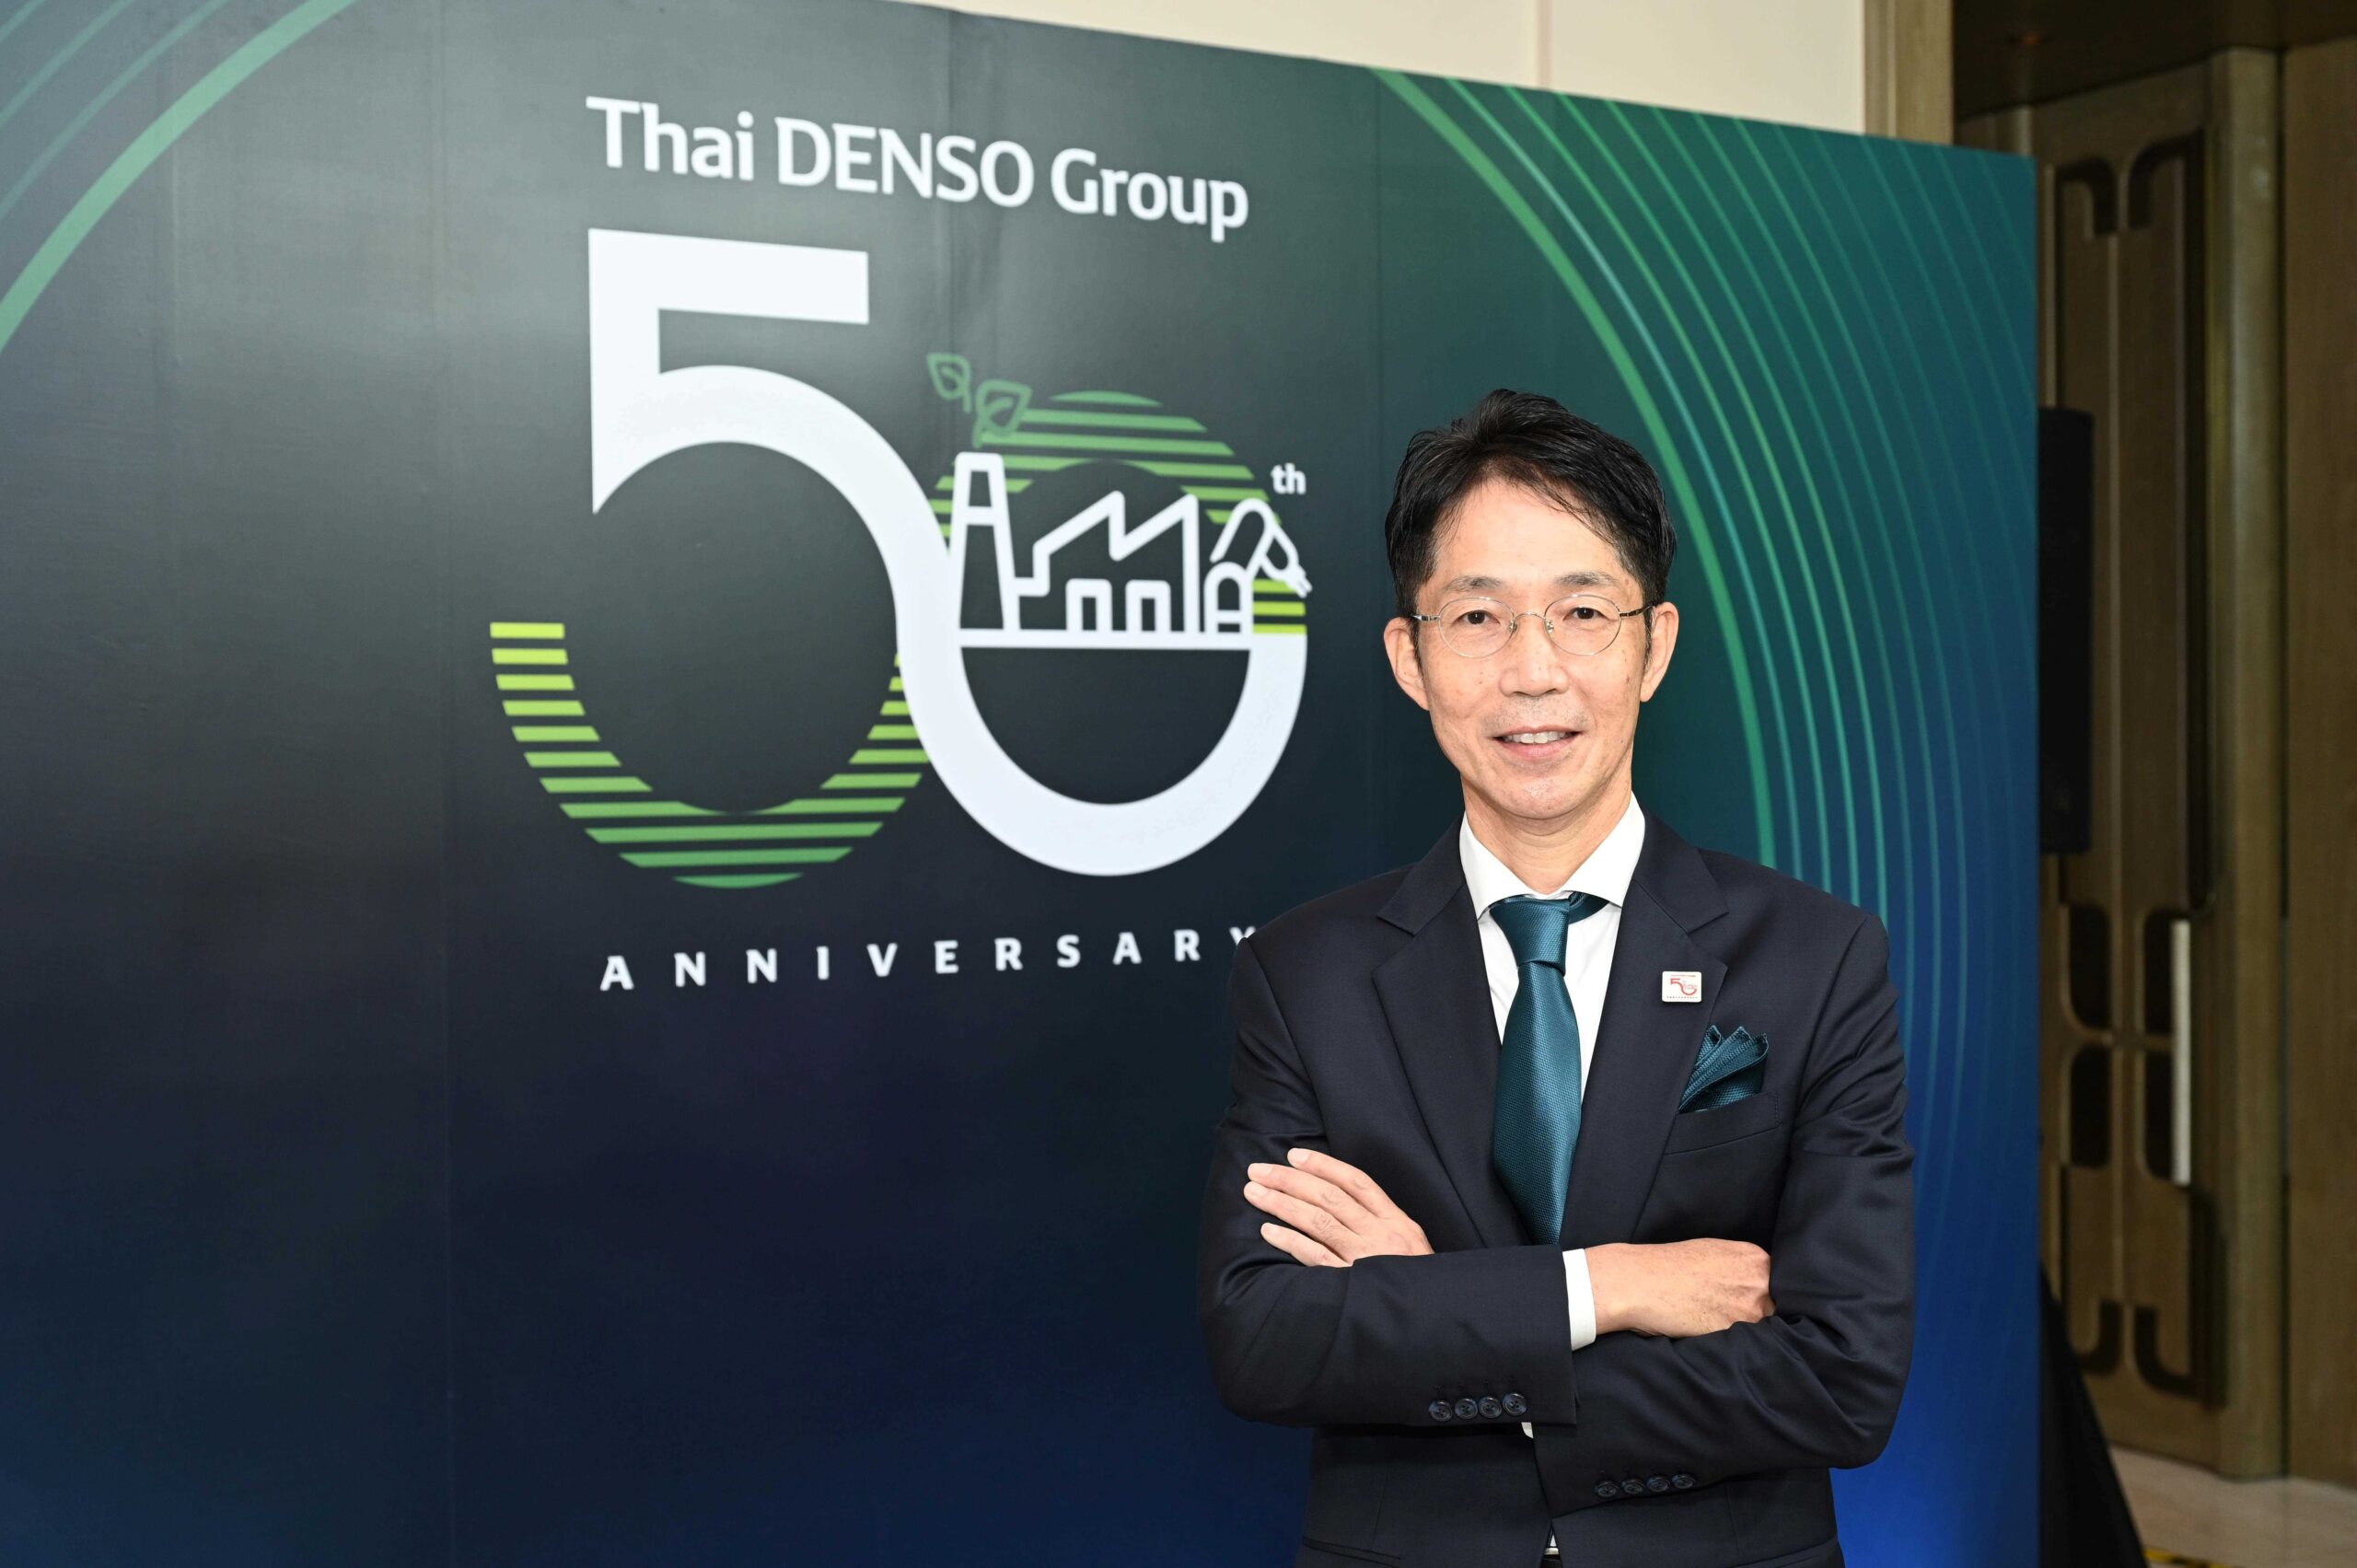 นายนาโอโตะ อินนูซูกะ ประธานเจ้าหน้าที่บริหารและกรรมการผู้จัดการใหญ่ บริษัท เด็นโซ่ อินเตอร์เนชั่นแนล เอเชีย จำกัด